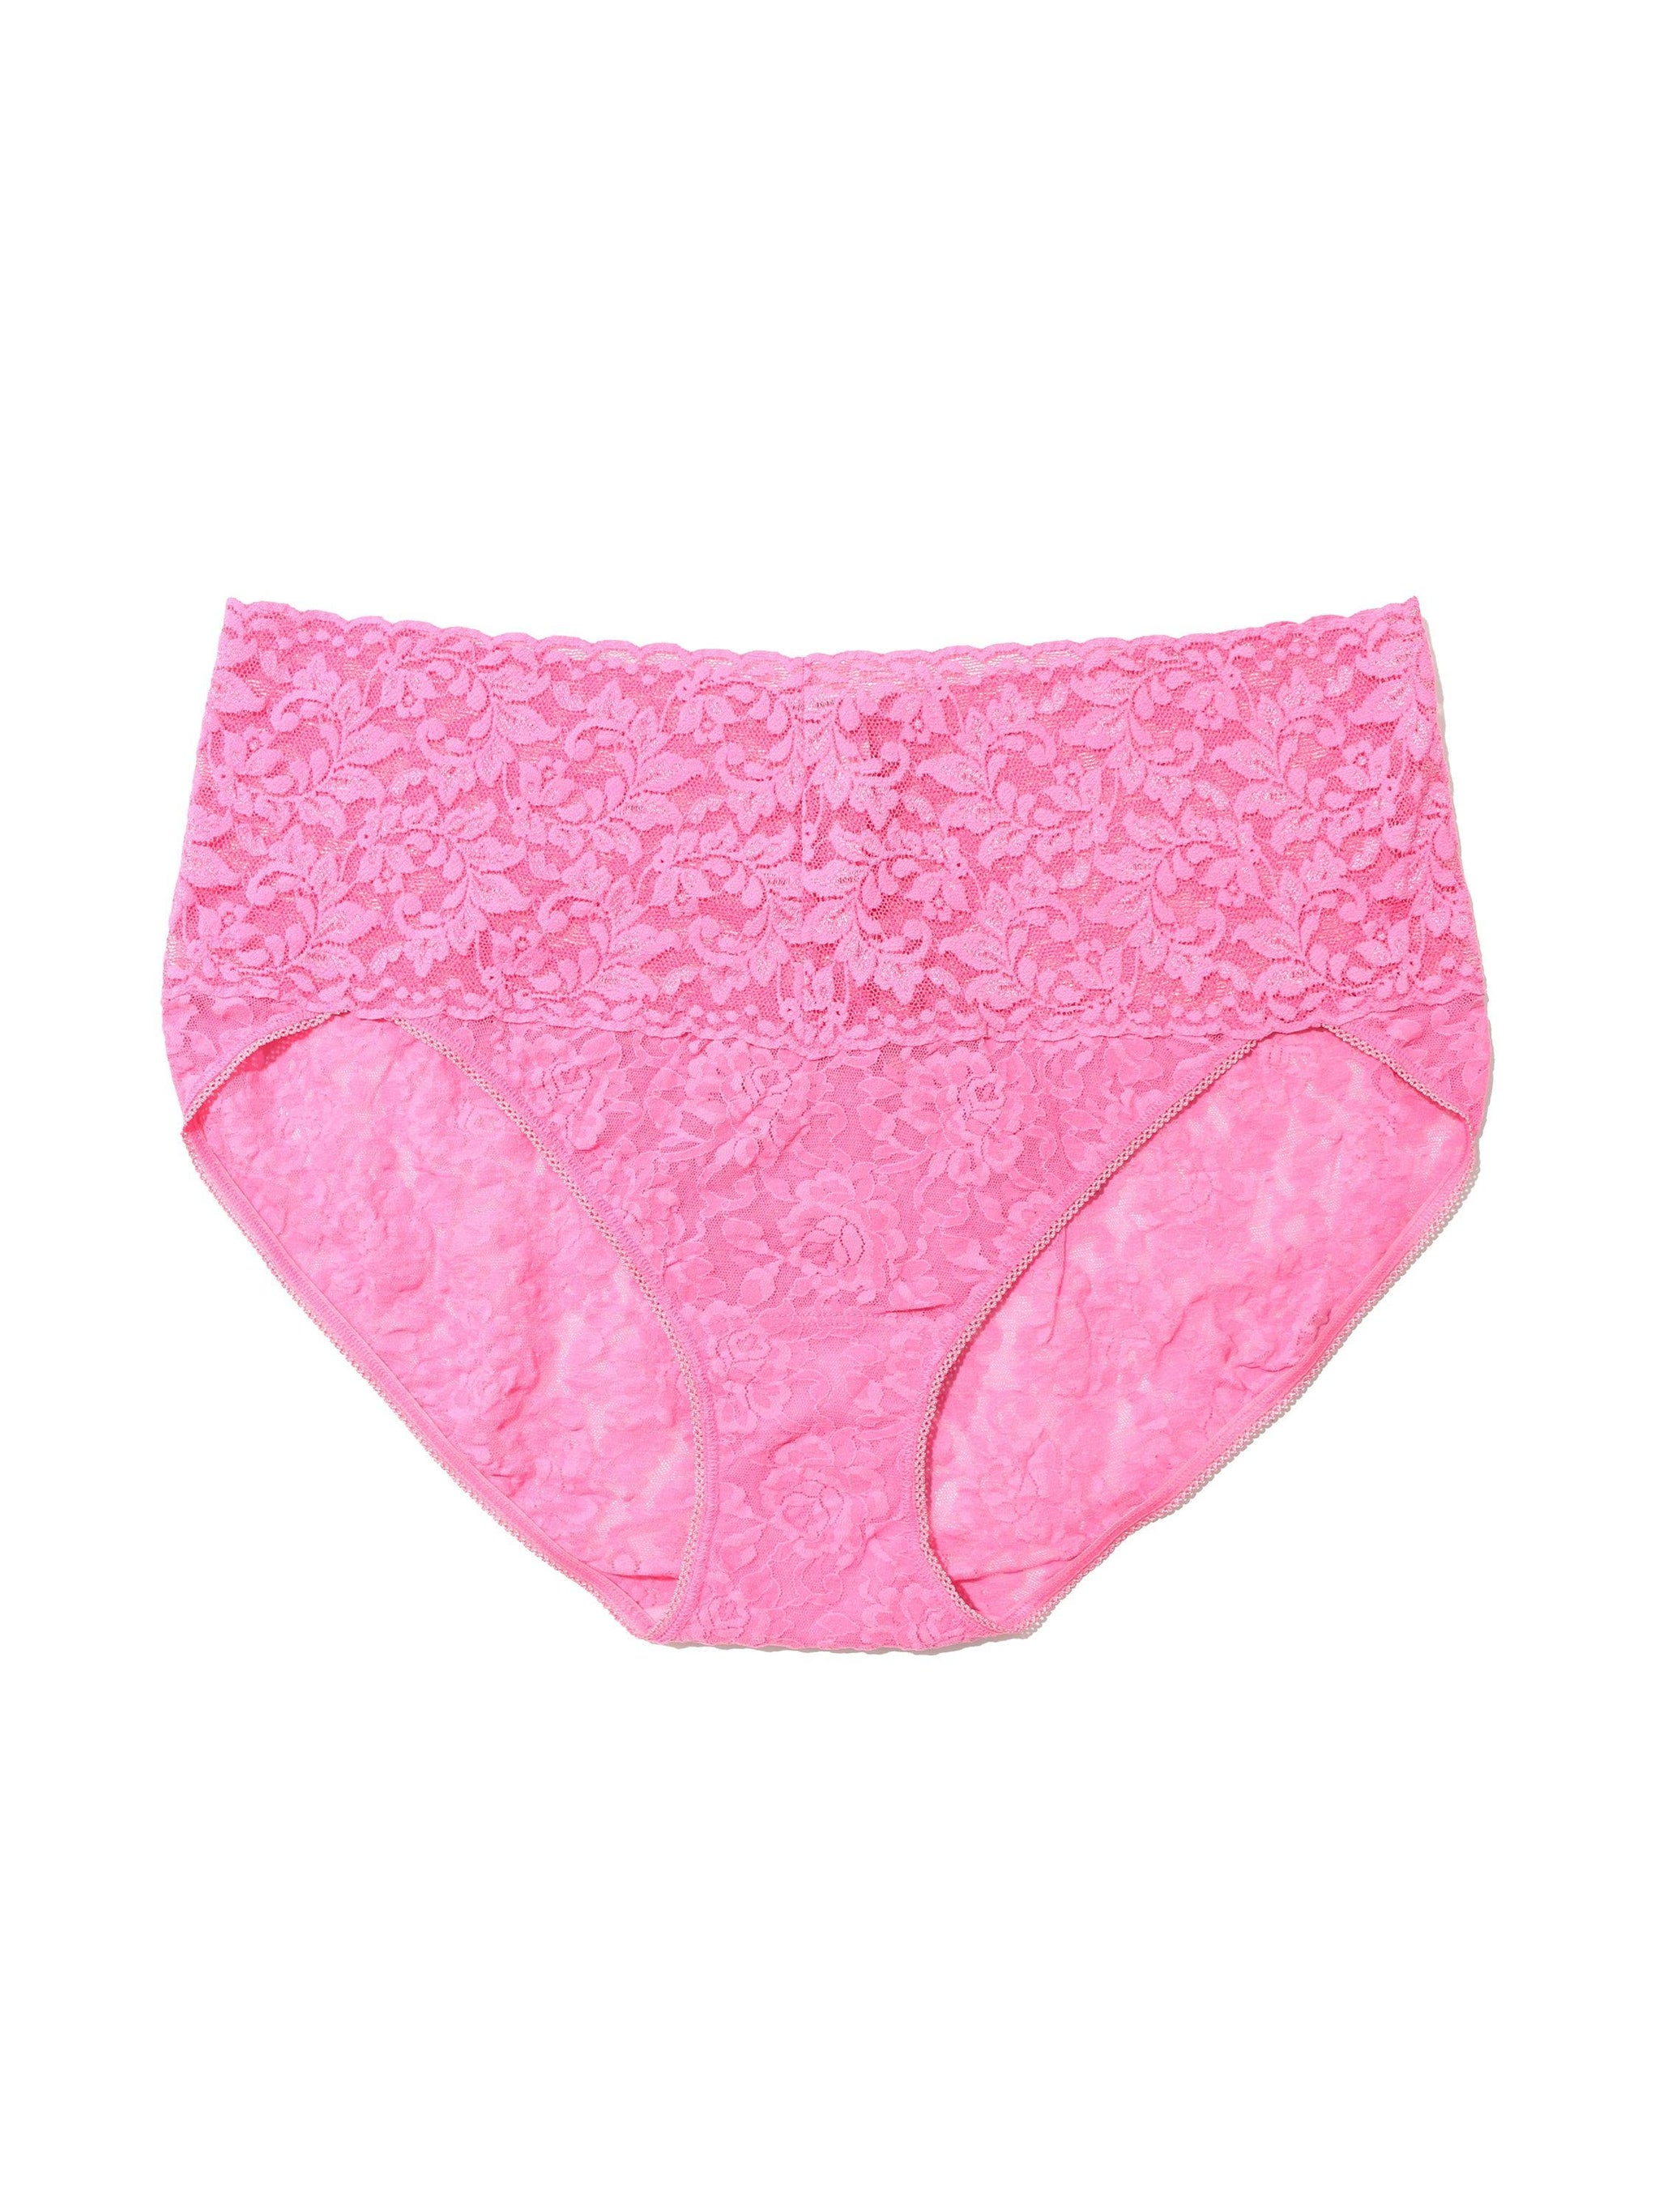 Plus Size Retro Lace V-Kini Taffy Pink